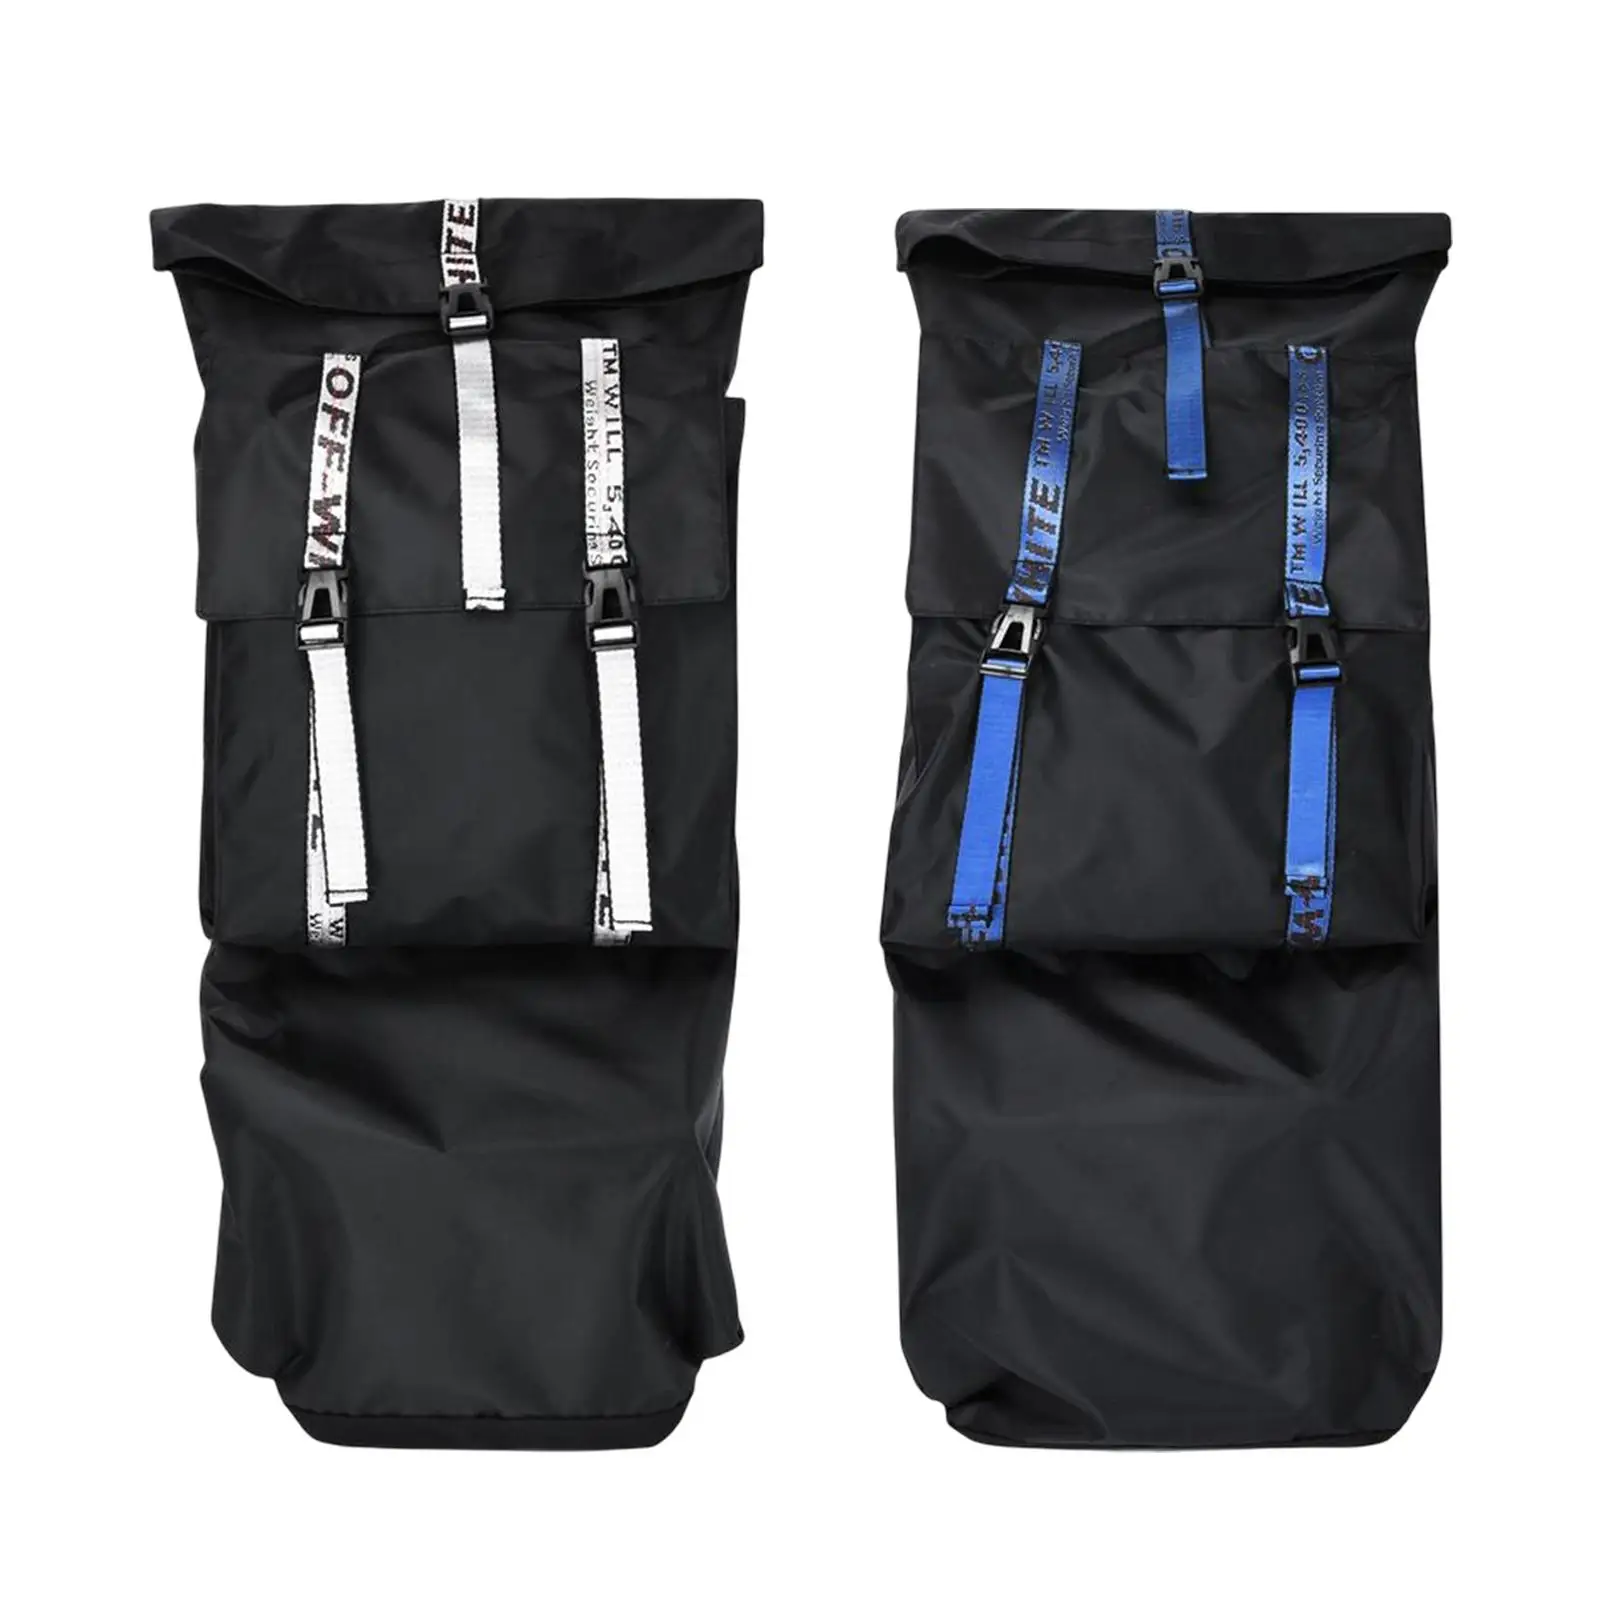 Skateboard Bag with Adjustable Shoulder Strap Water Resistant Storage Skateboard Backpack Longboard Cover Case for Unisex Kids